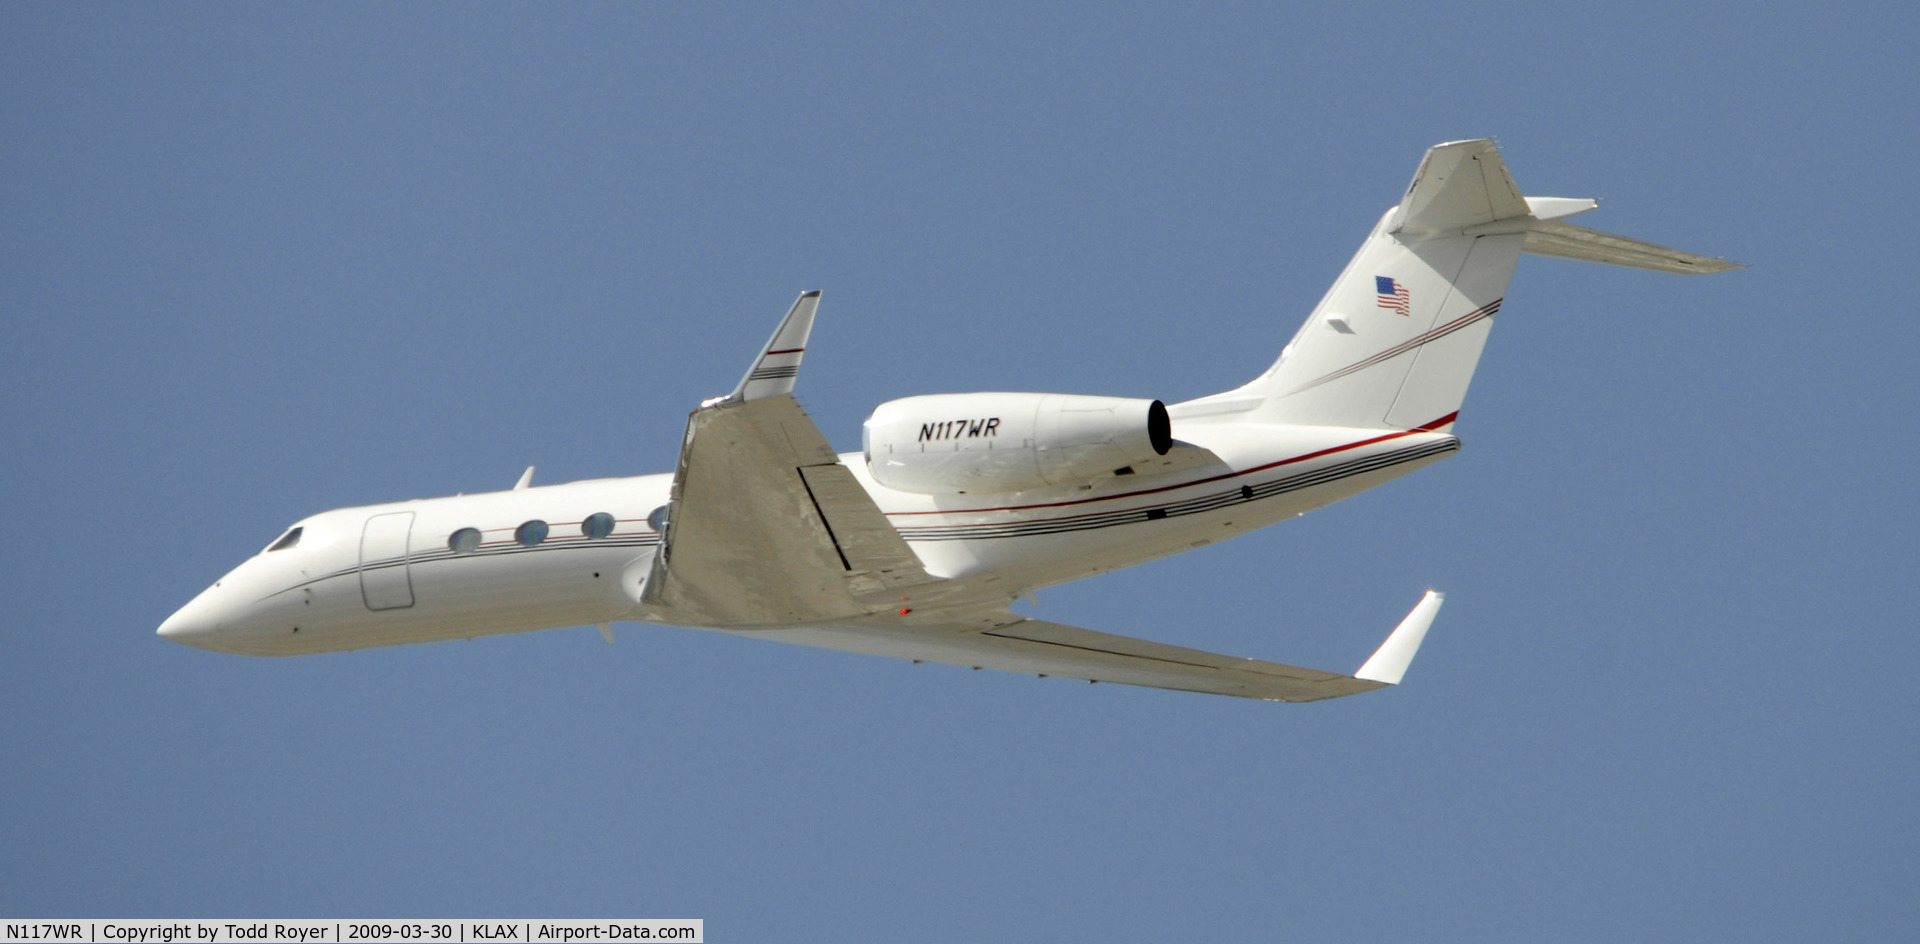 N117WR, 2005 Gulfstream Aerospace GIV-X (G350) C/N 4015, Departing LAX on 25L